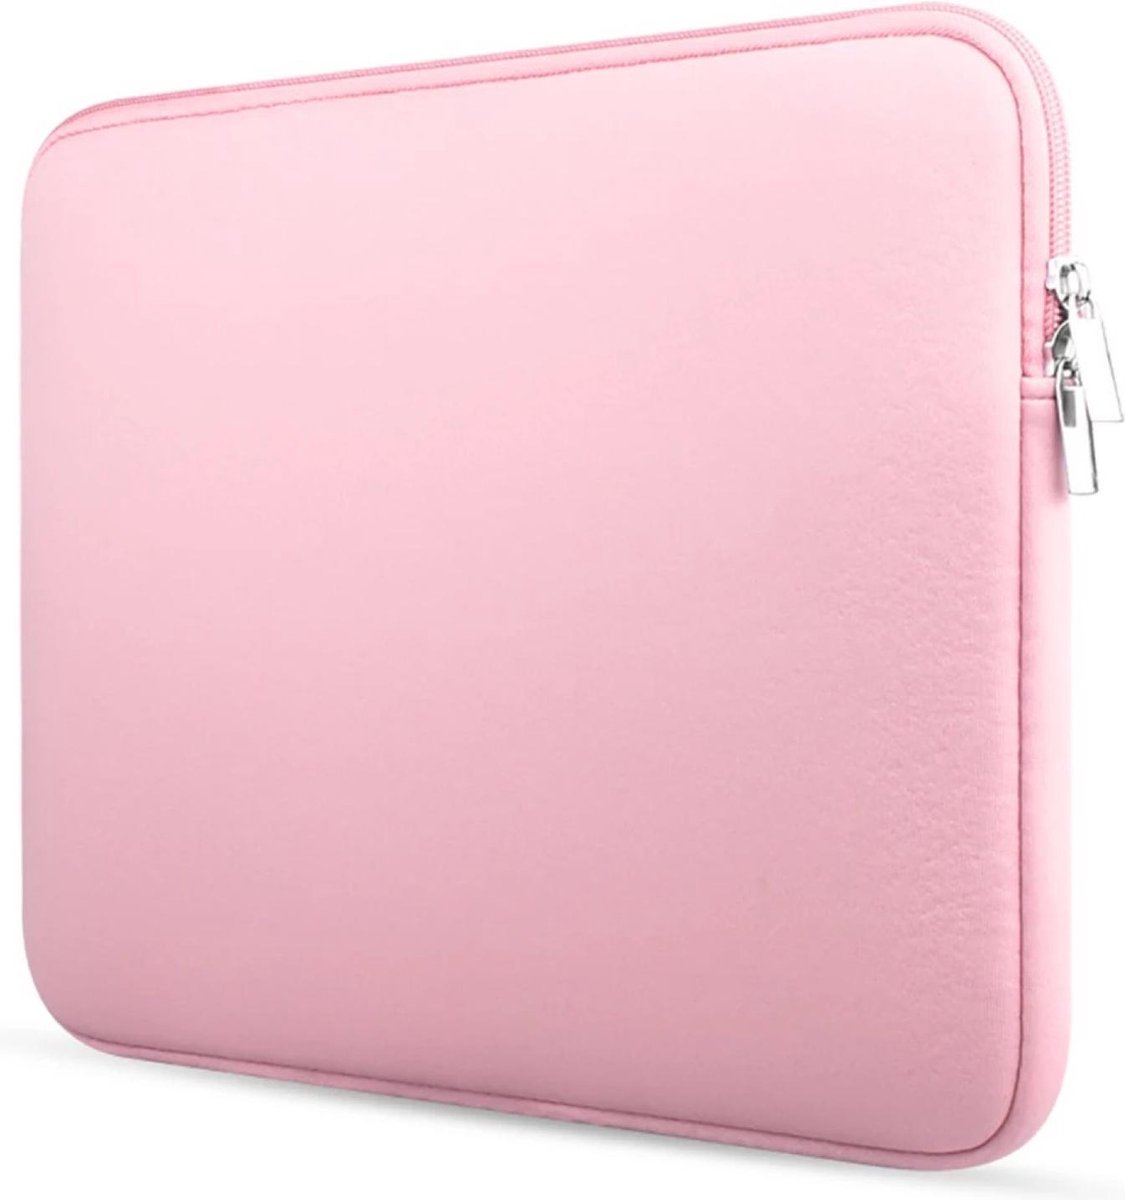 Laptopcase – sleeve – spatwaterdicht – 14,6 inch – laptoptas – roze kleur - Soft Touch